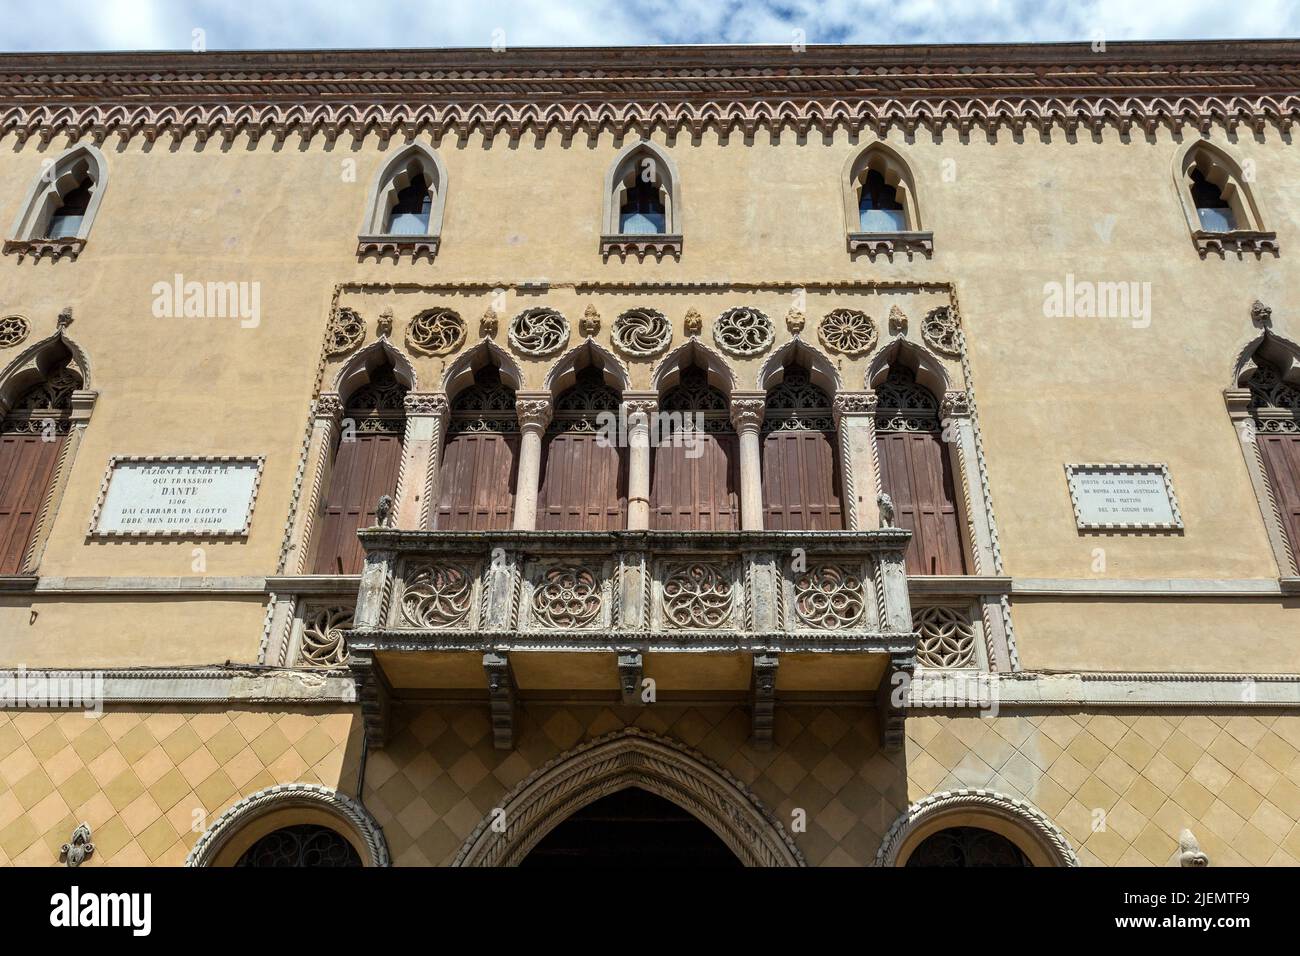 Padova, Italia - 06 10 2022: Palazzo Romanin Jacur a Padova un palazzo gotico veneziano del 14th secolo. Foto Stock